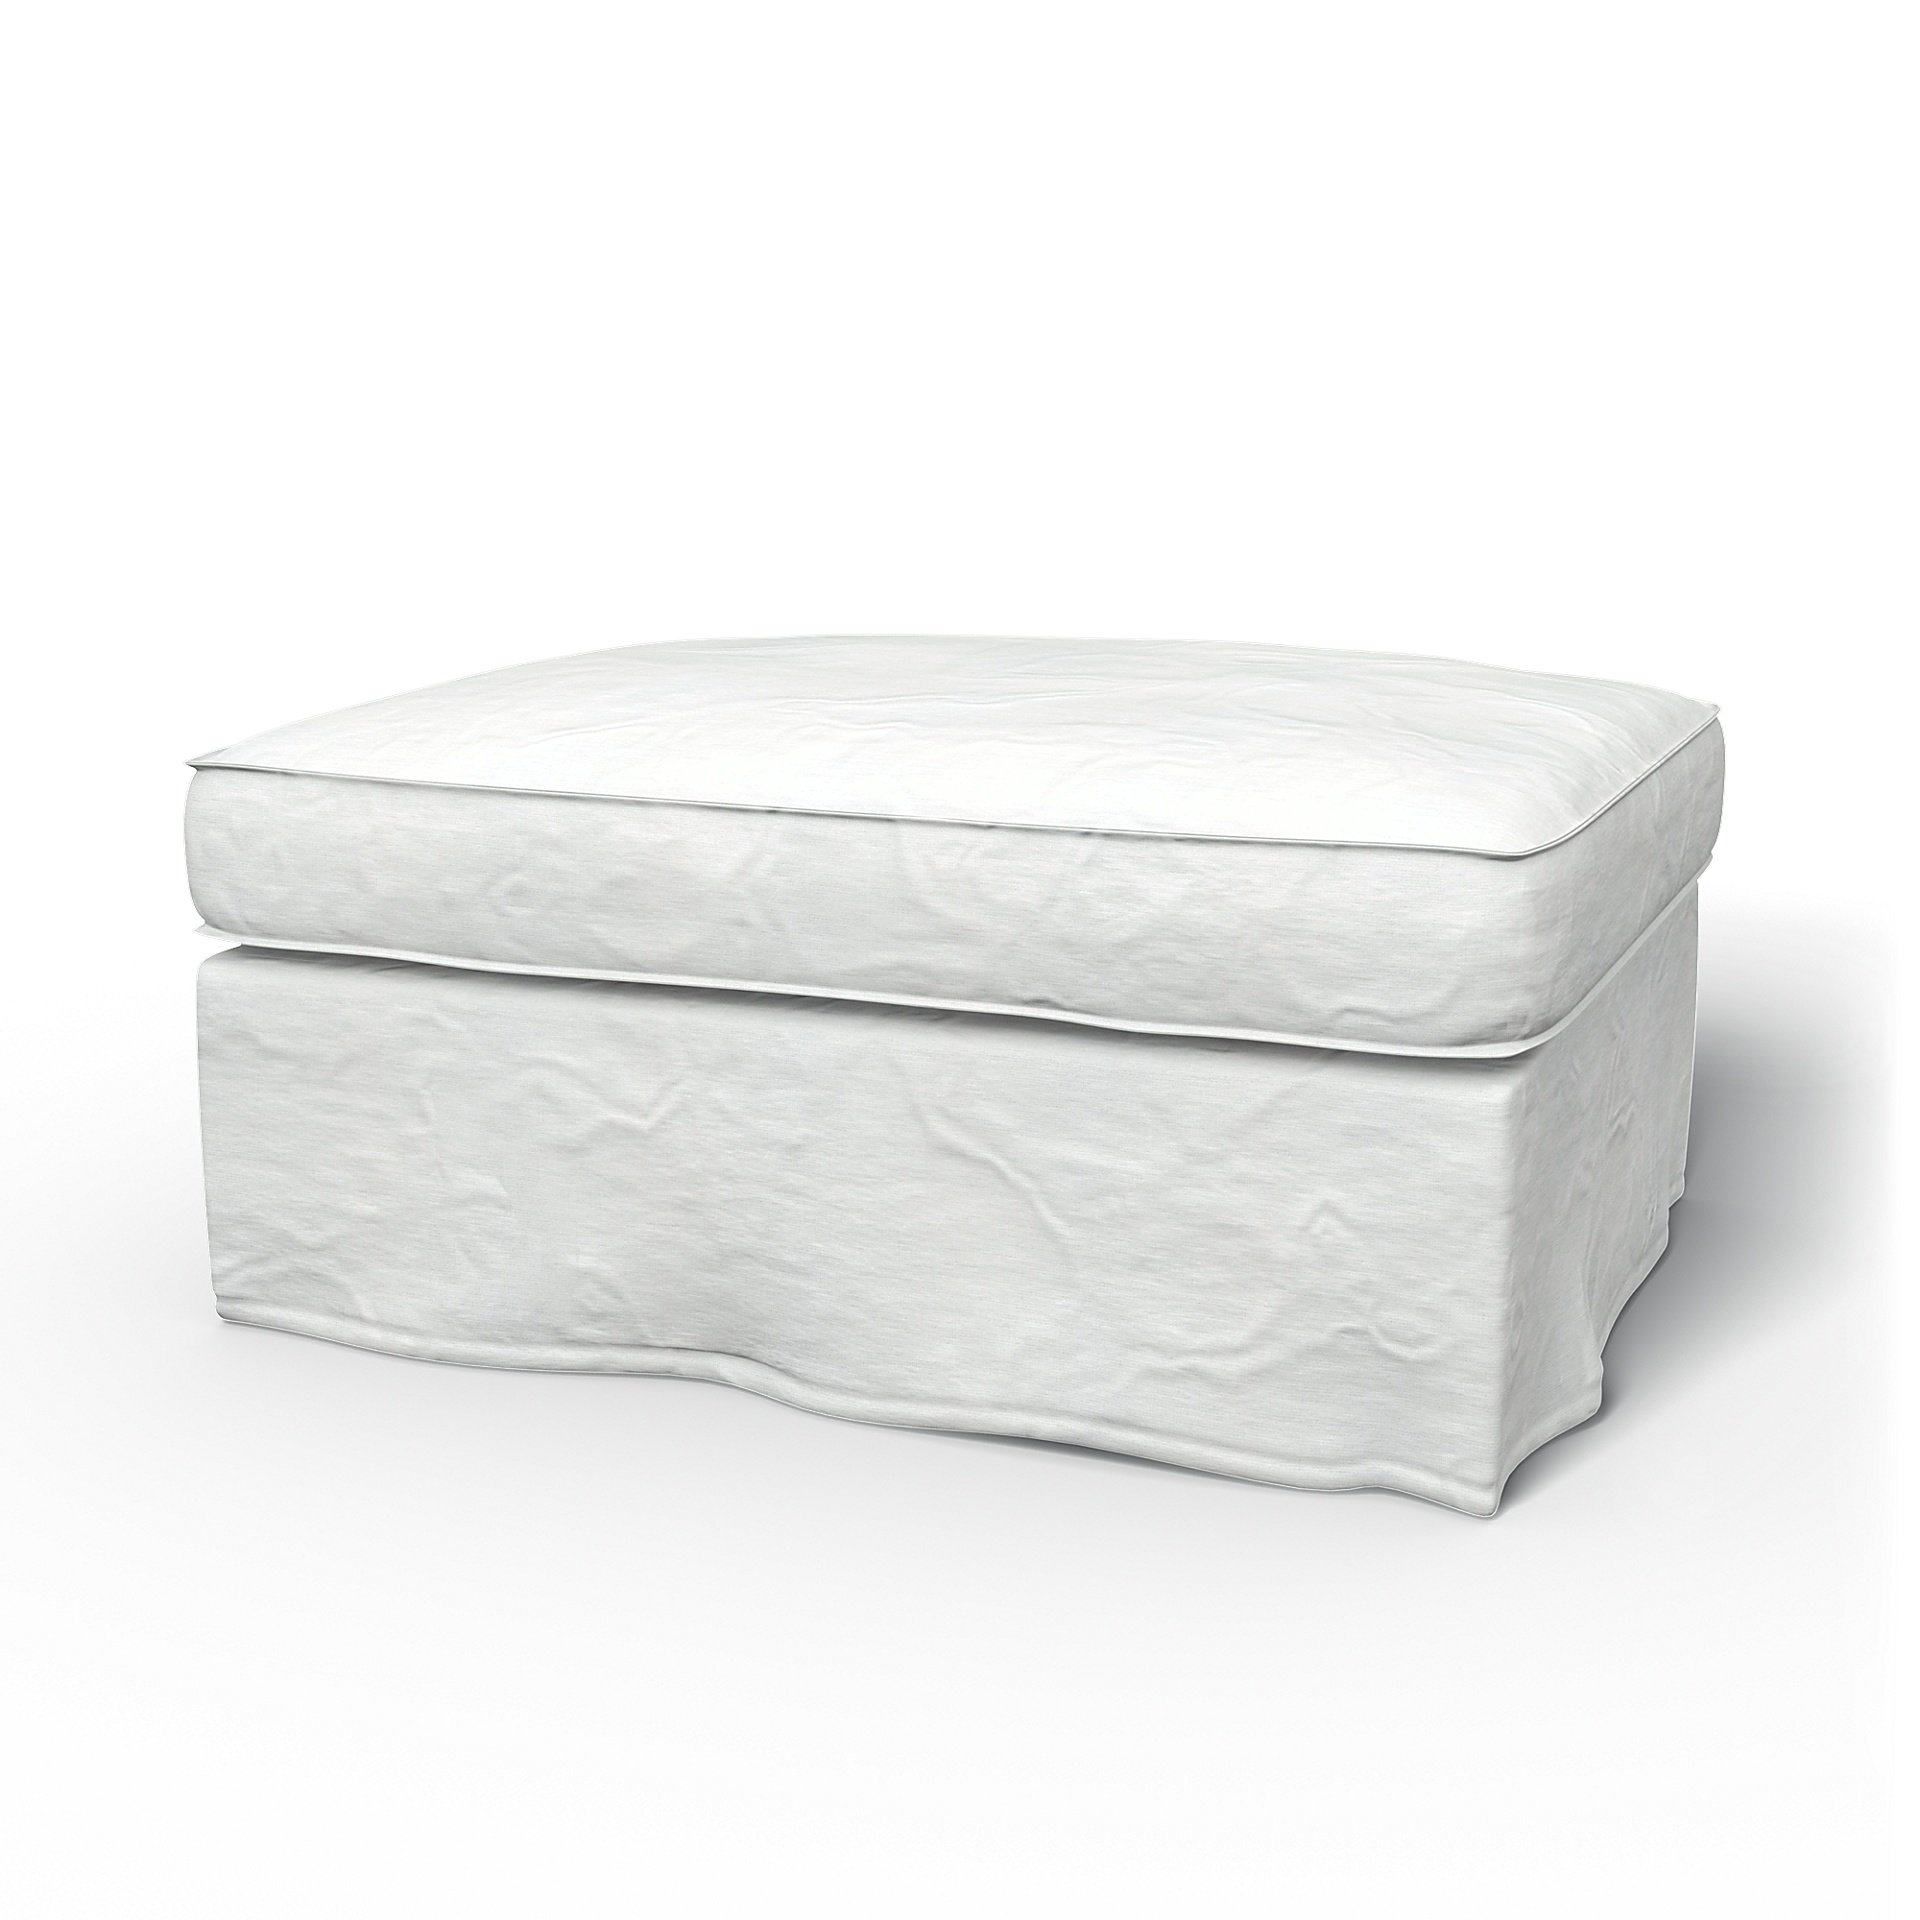 IKEA - Kivik Footstool Cover, White, Linen - Bemz